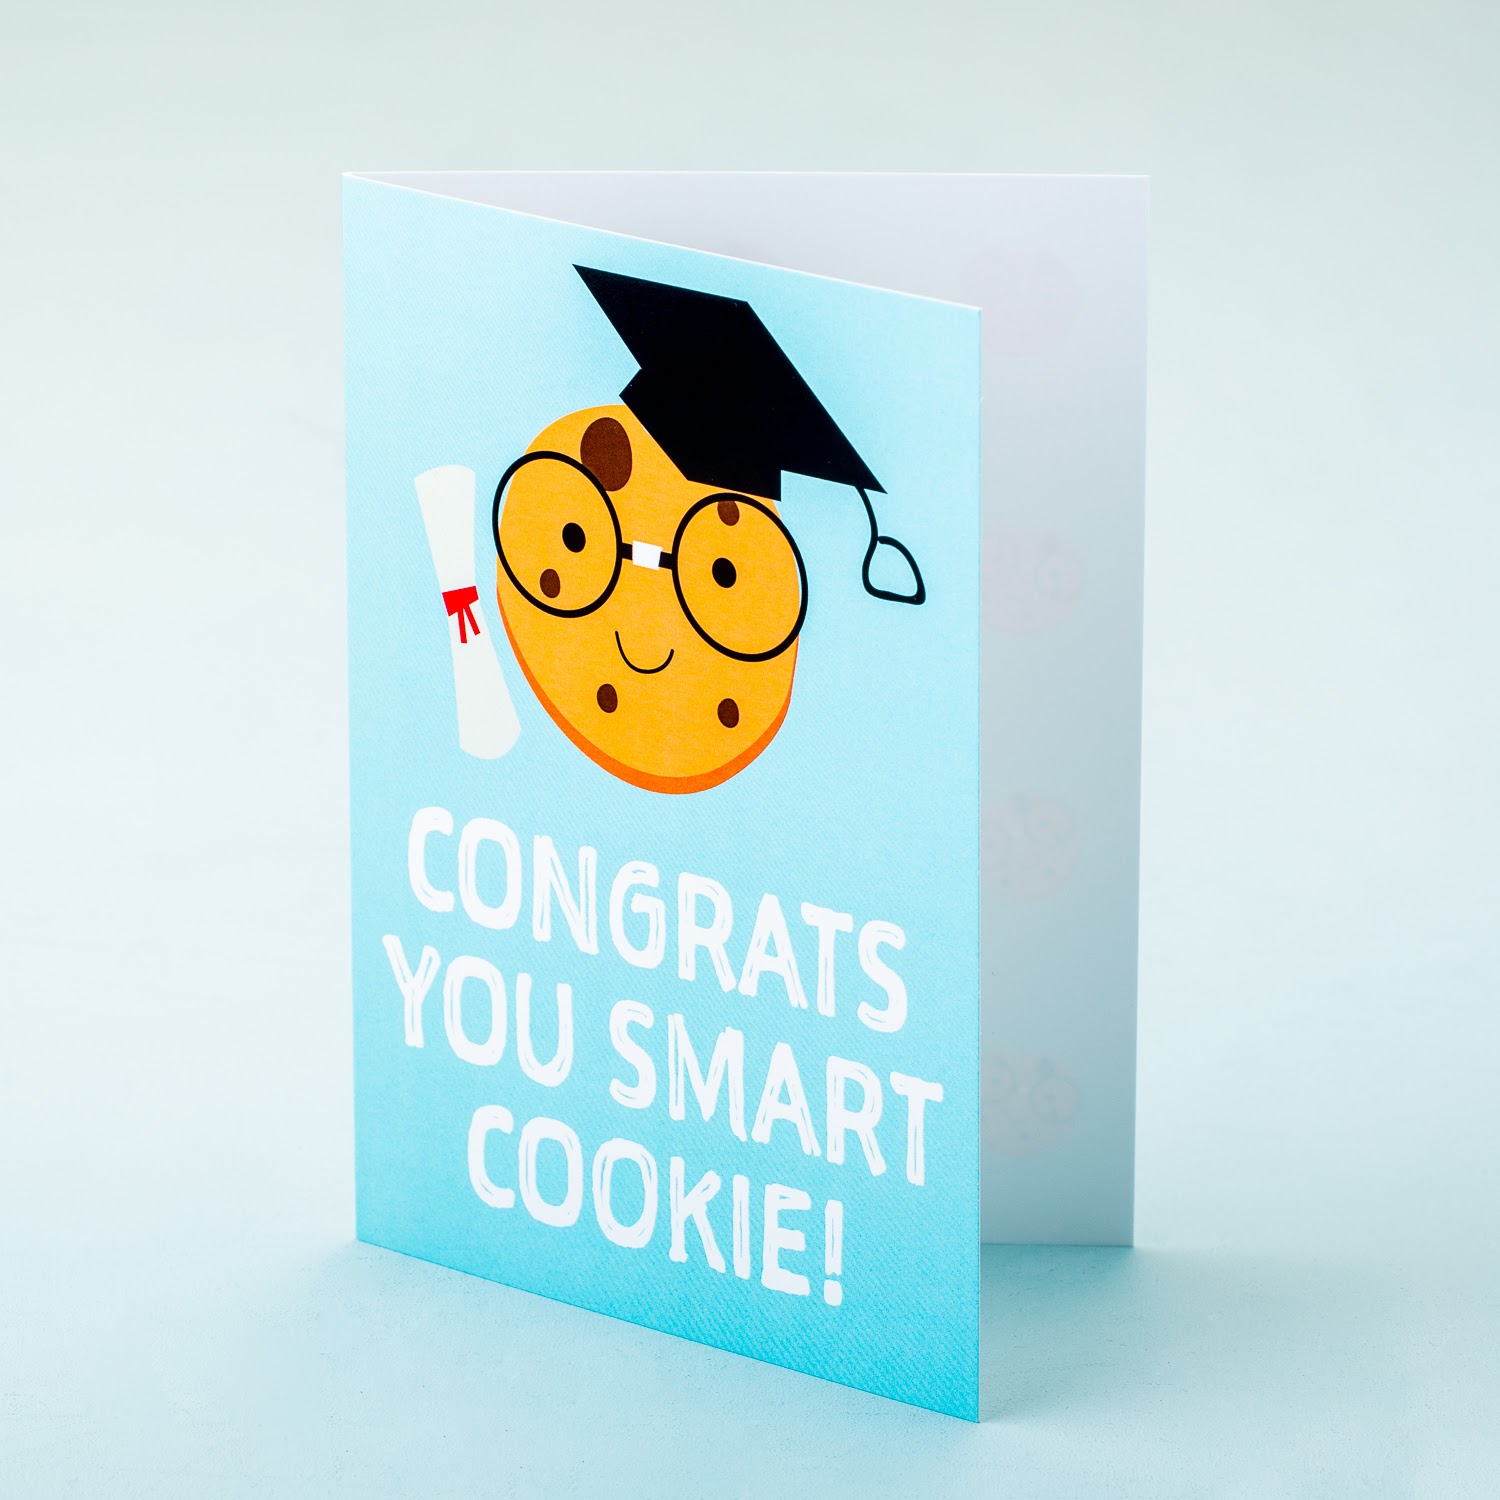 Wenskaart Congrats You Smart Cookie!